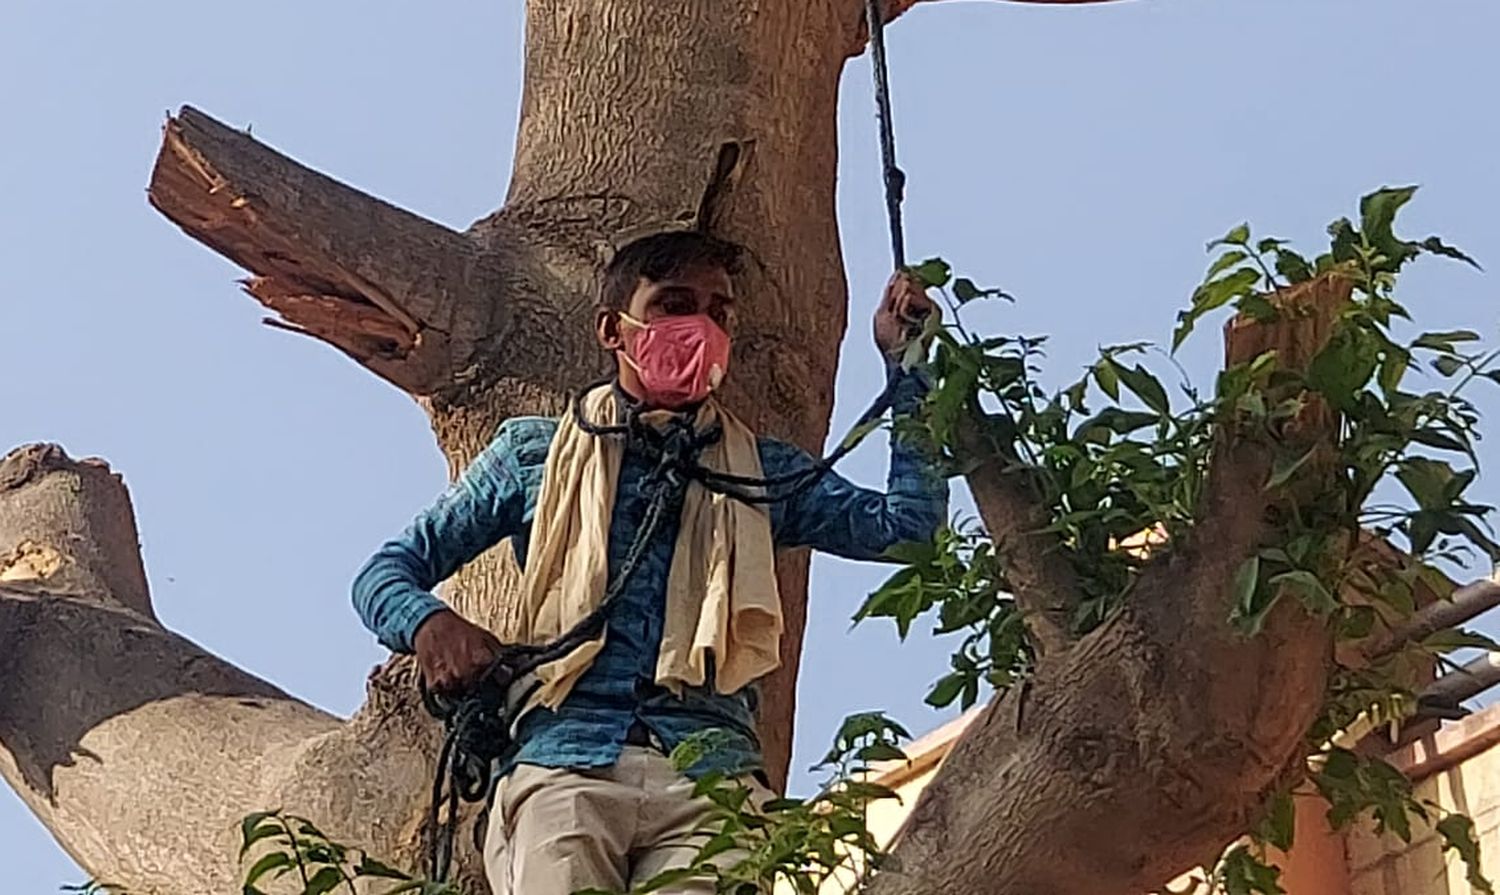 कोरोना गाइडलाइन की पालना करते हुए चढ़ा कलक्ट्रेट स्थित पेड़ पर, फांसी लगाने की दी धमकी